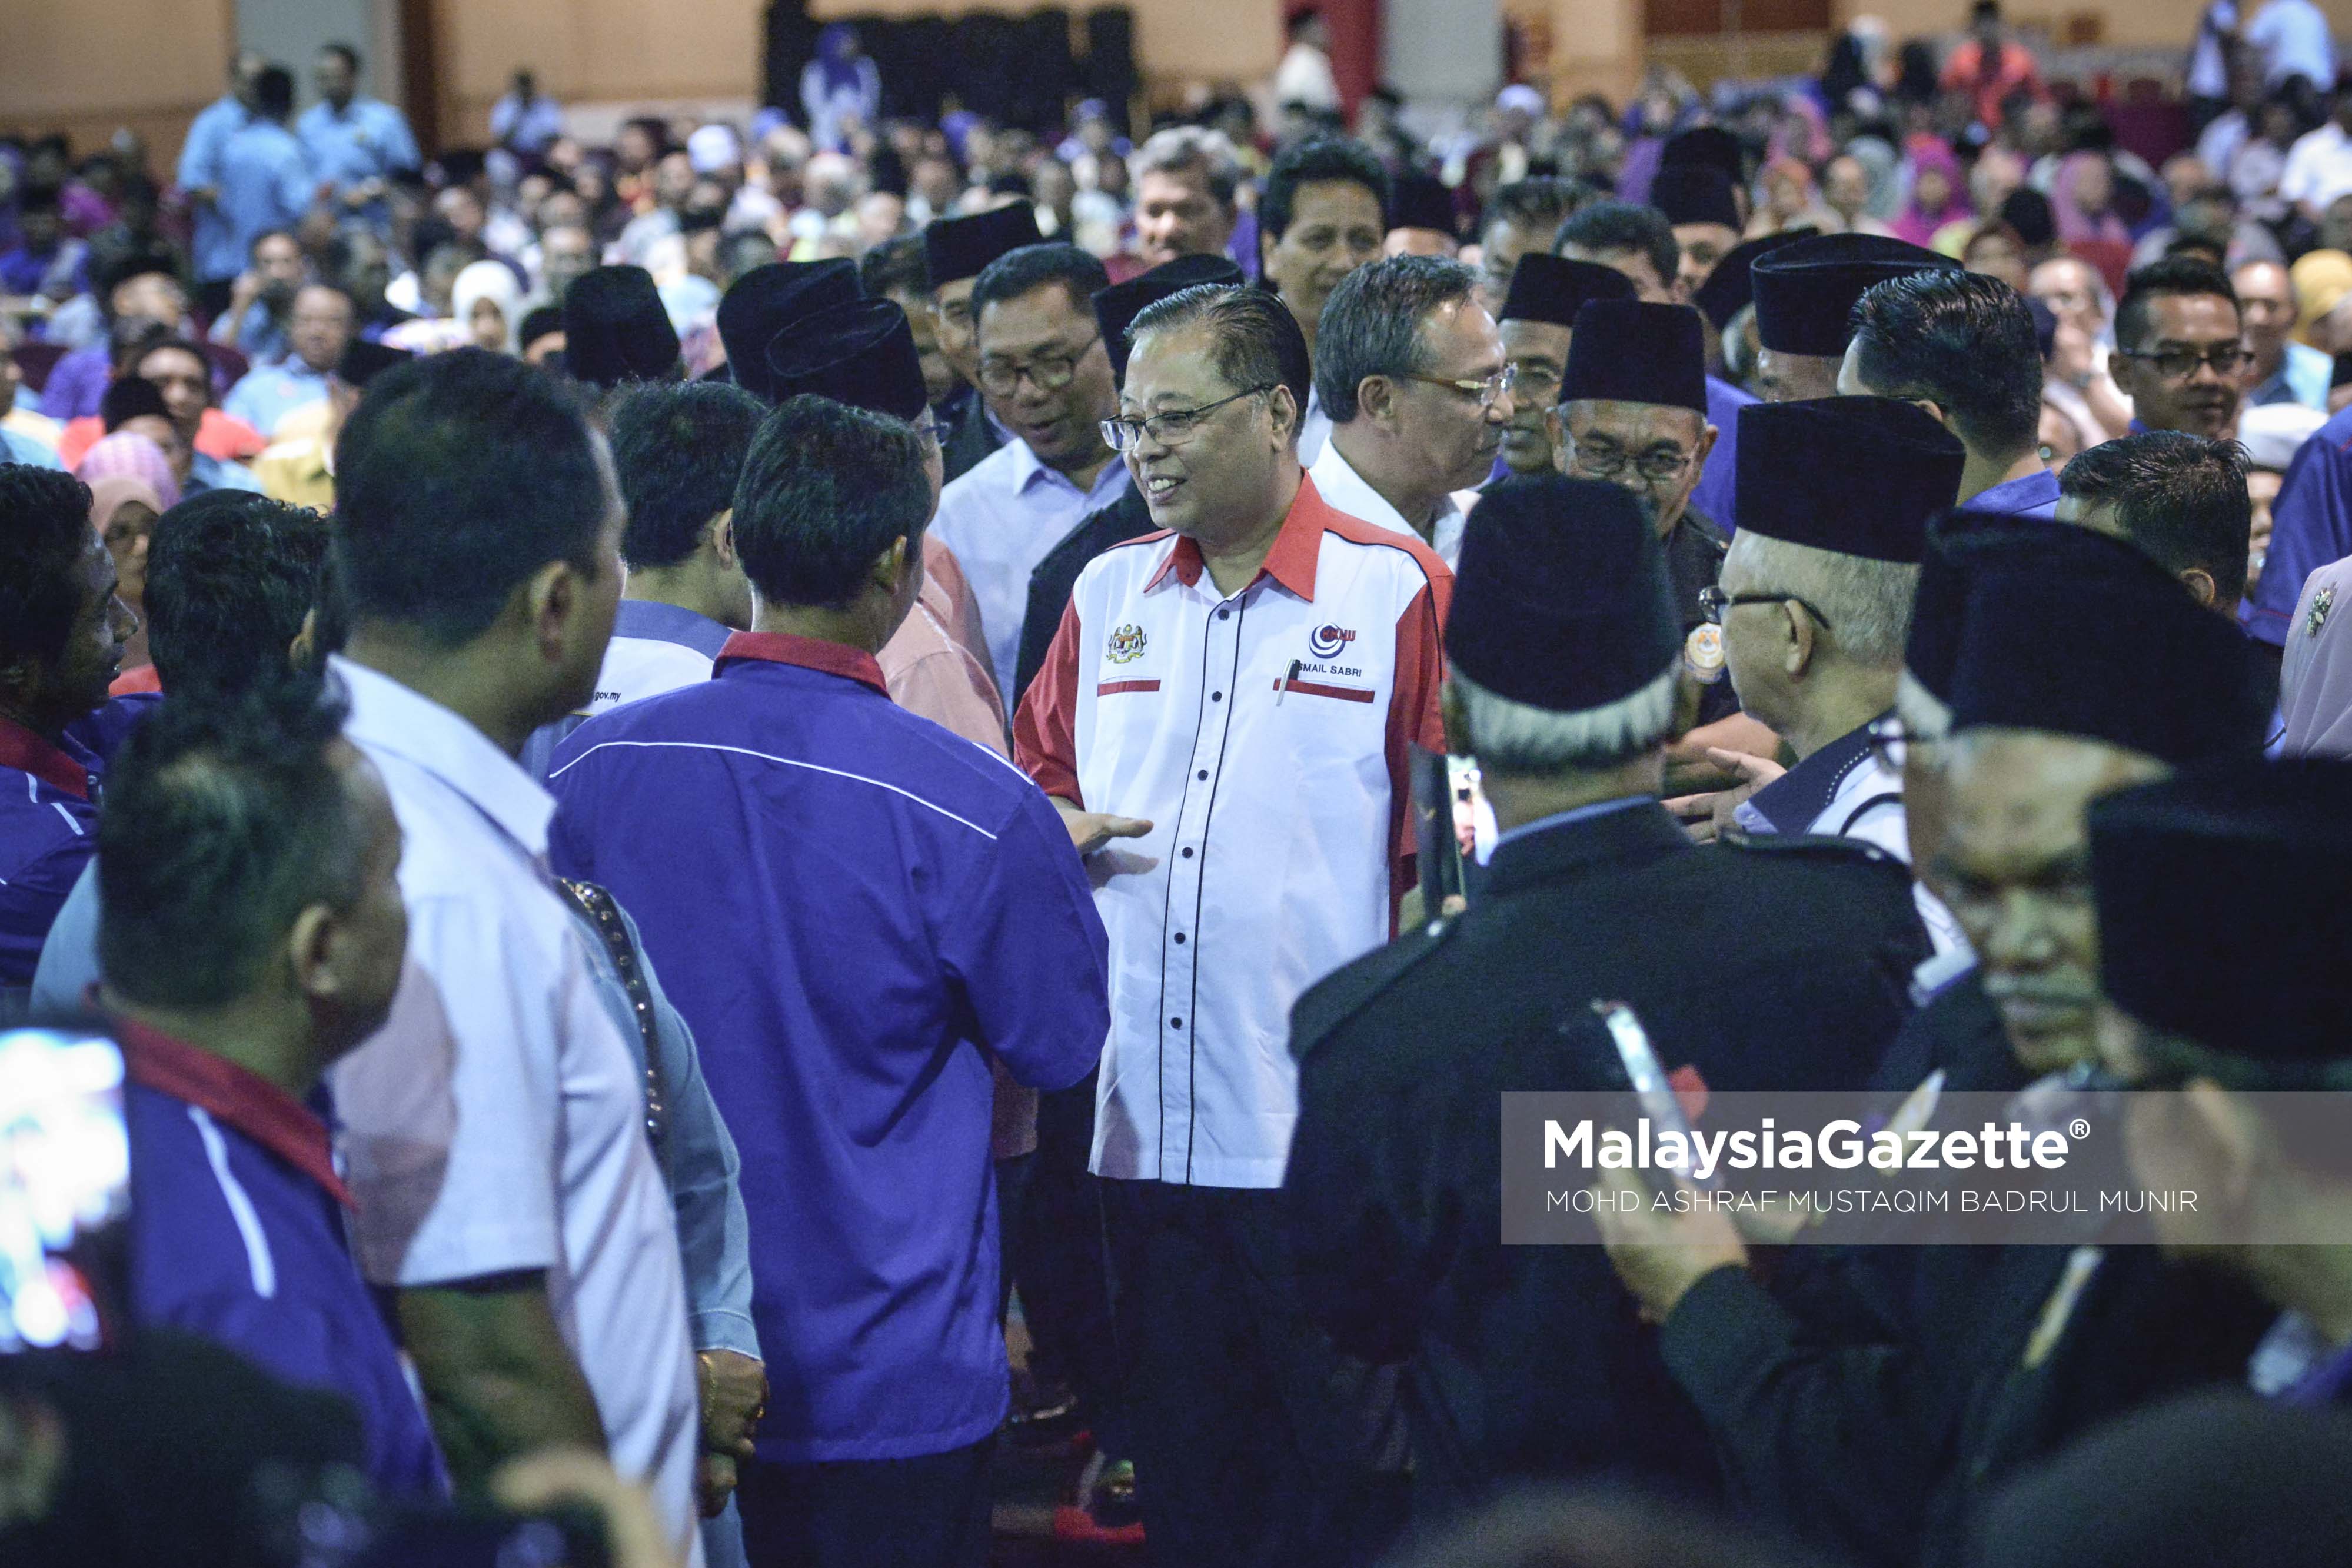 Menteri Kemajuan Luar Bandar dan Wilayah, Datuk Seri Ismail Sabri Yaakob bersalaman dengan orang ramai ketika hadir pada Majlis Perhimpunan JKKK Negeri Johor di Berjaya Waterfront Hotel, Johor Bahru. foto ASHRAF MUSTAQIM BADRUL MUNIR, 16 JANUARI 2017.